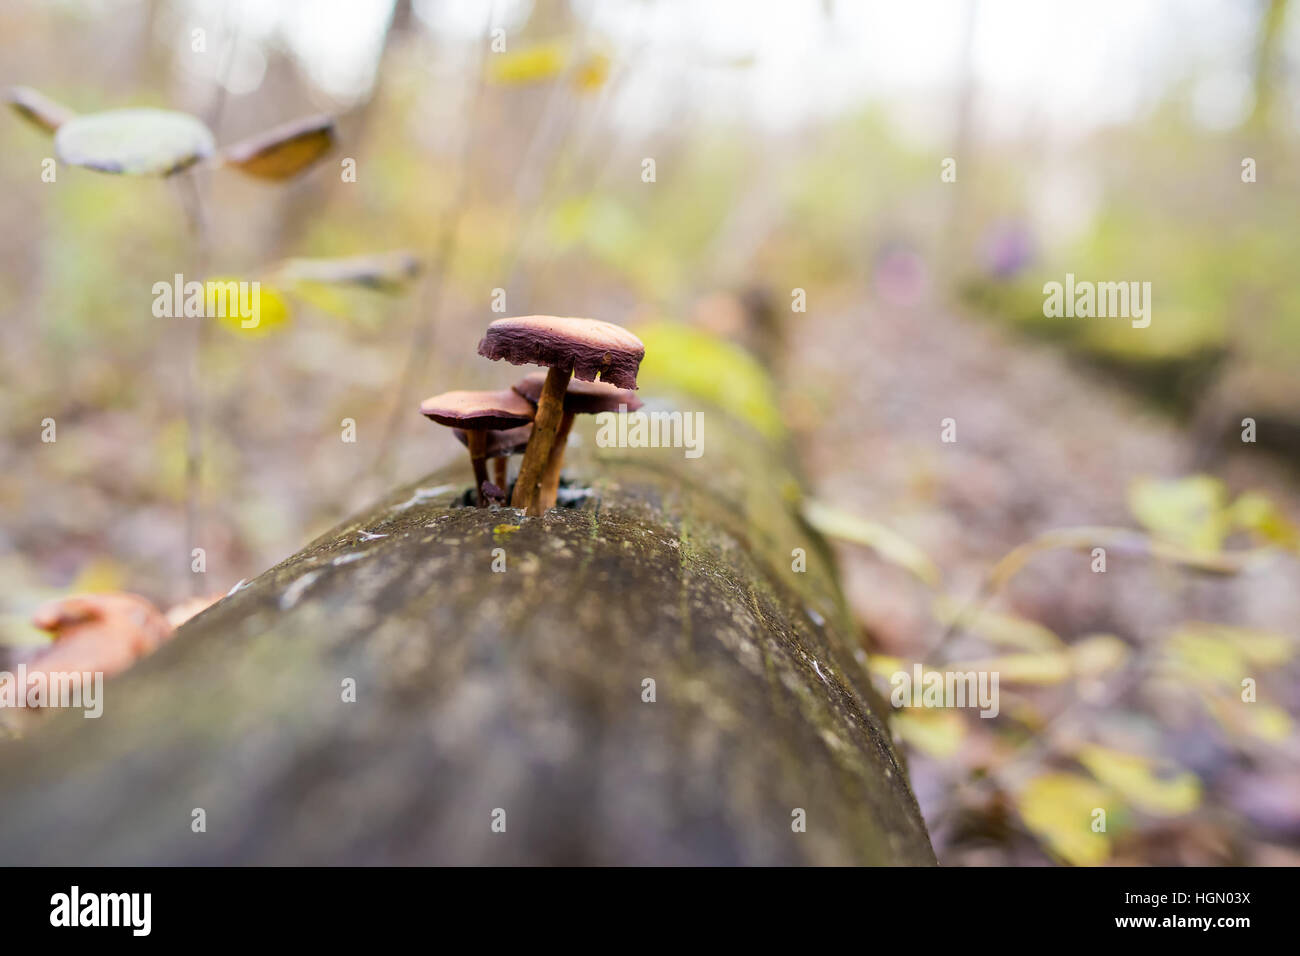 Mushroom cultivé sur arbre dans la lumière naturelle Banque D'Images